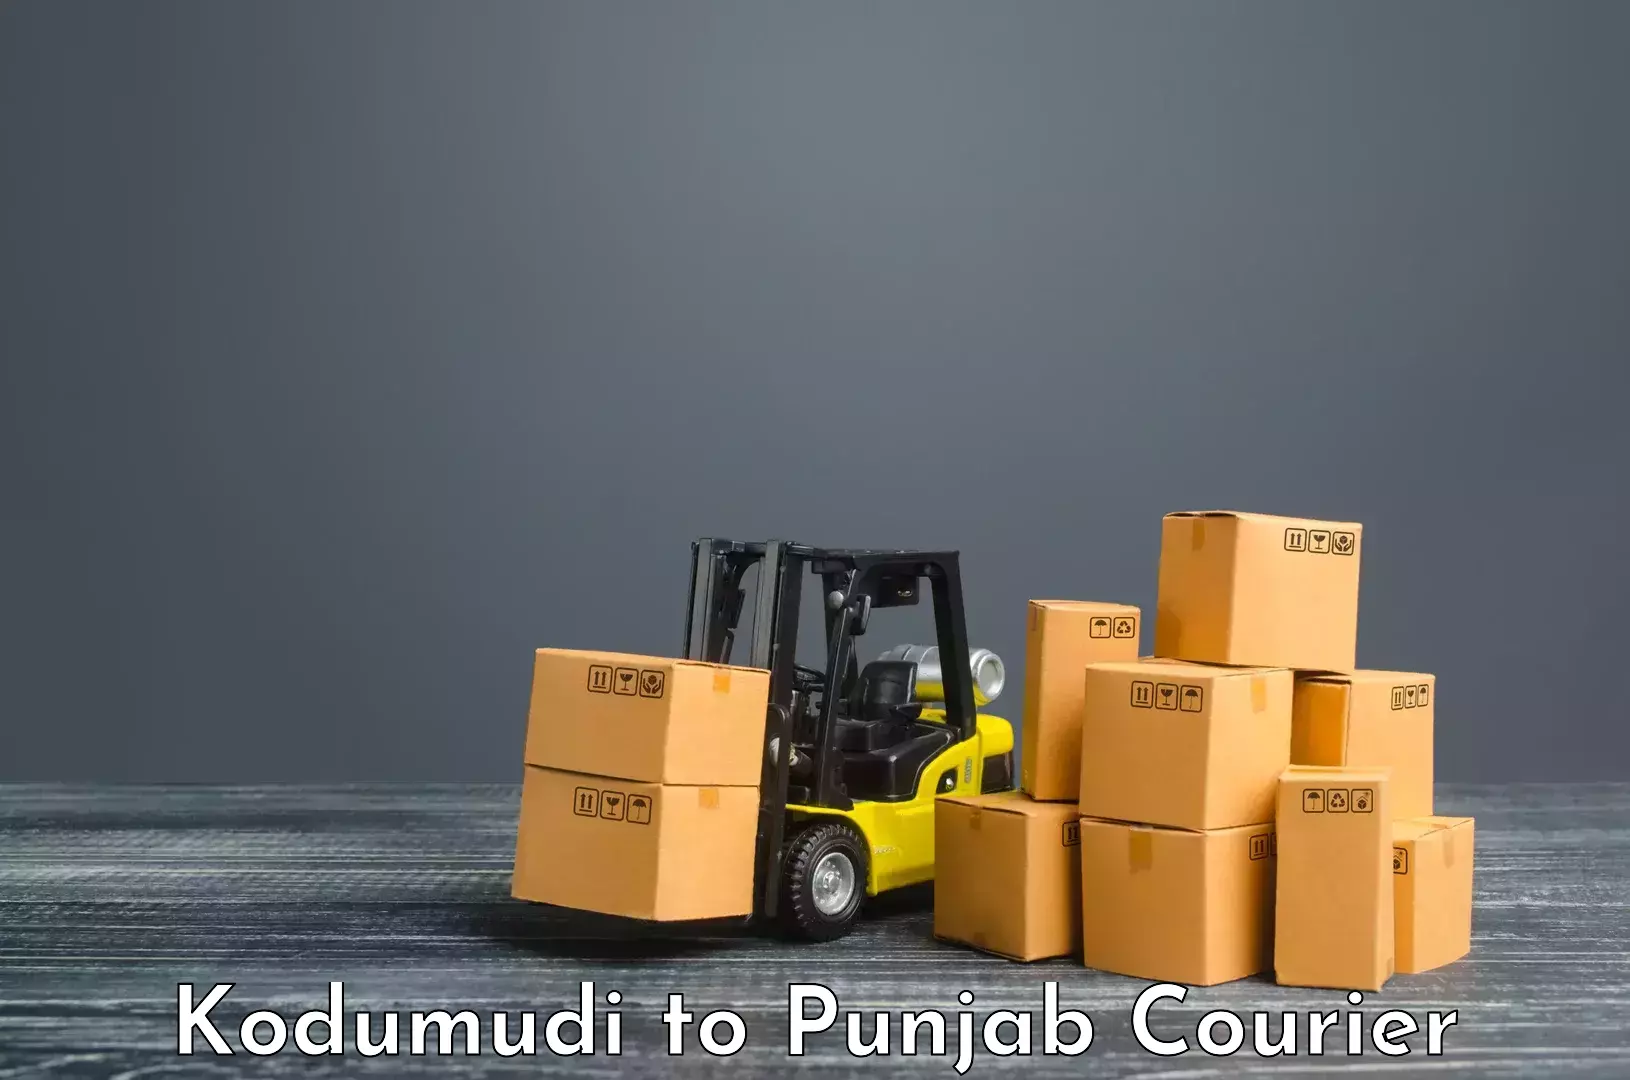 Customer-centric shipping Kodumudi to Nabha